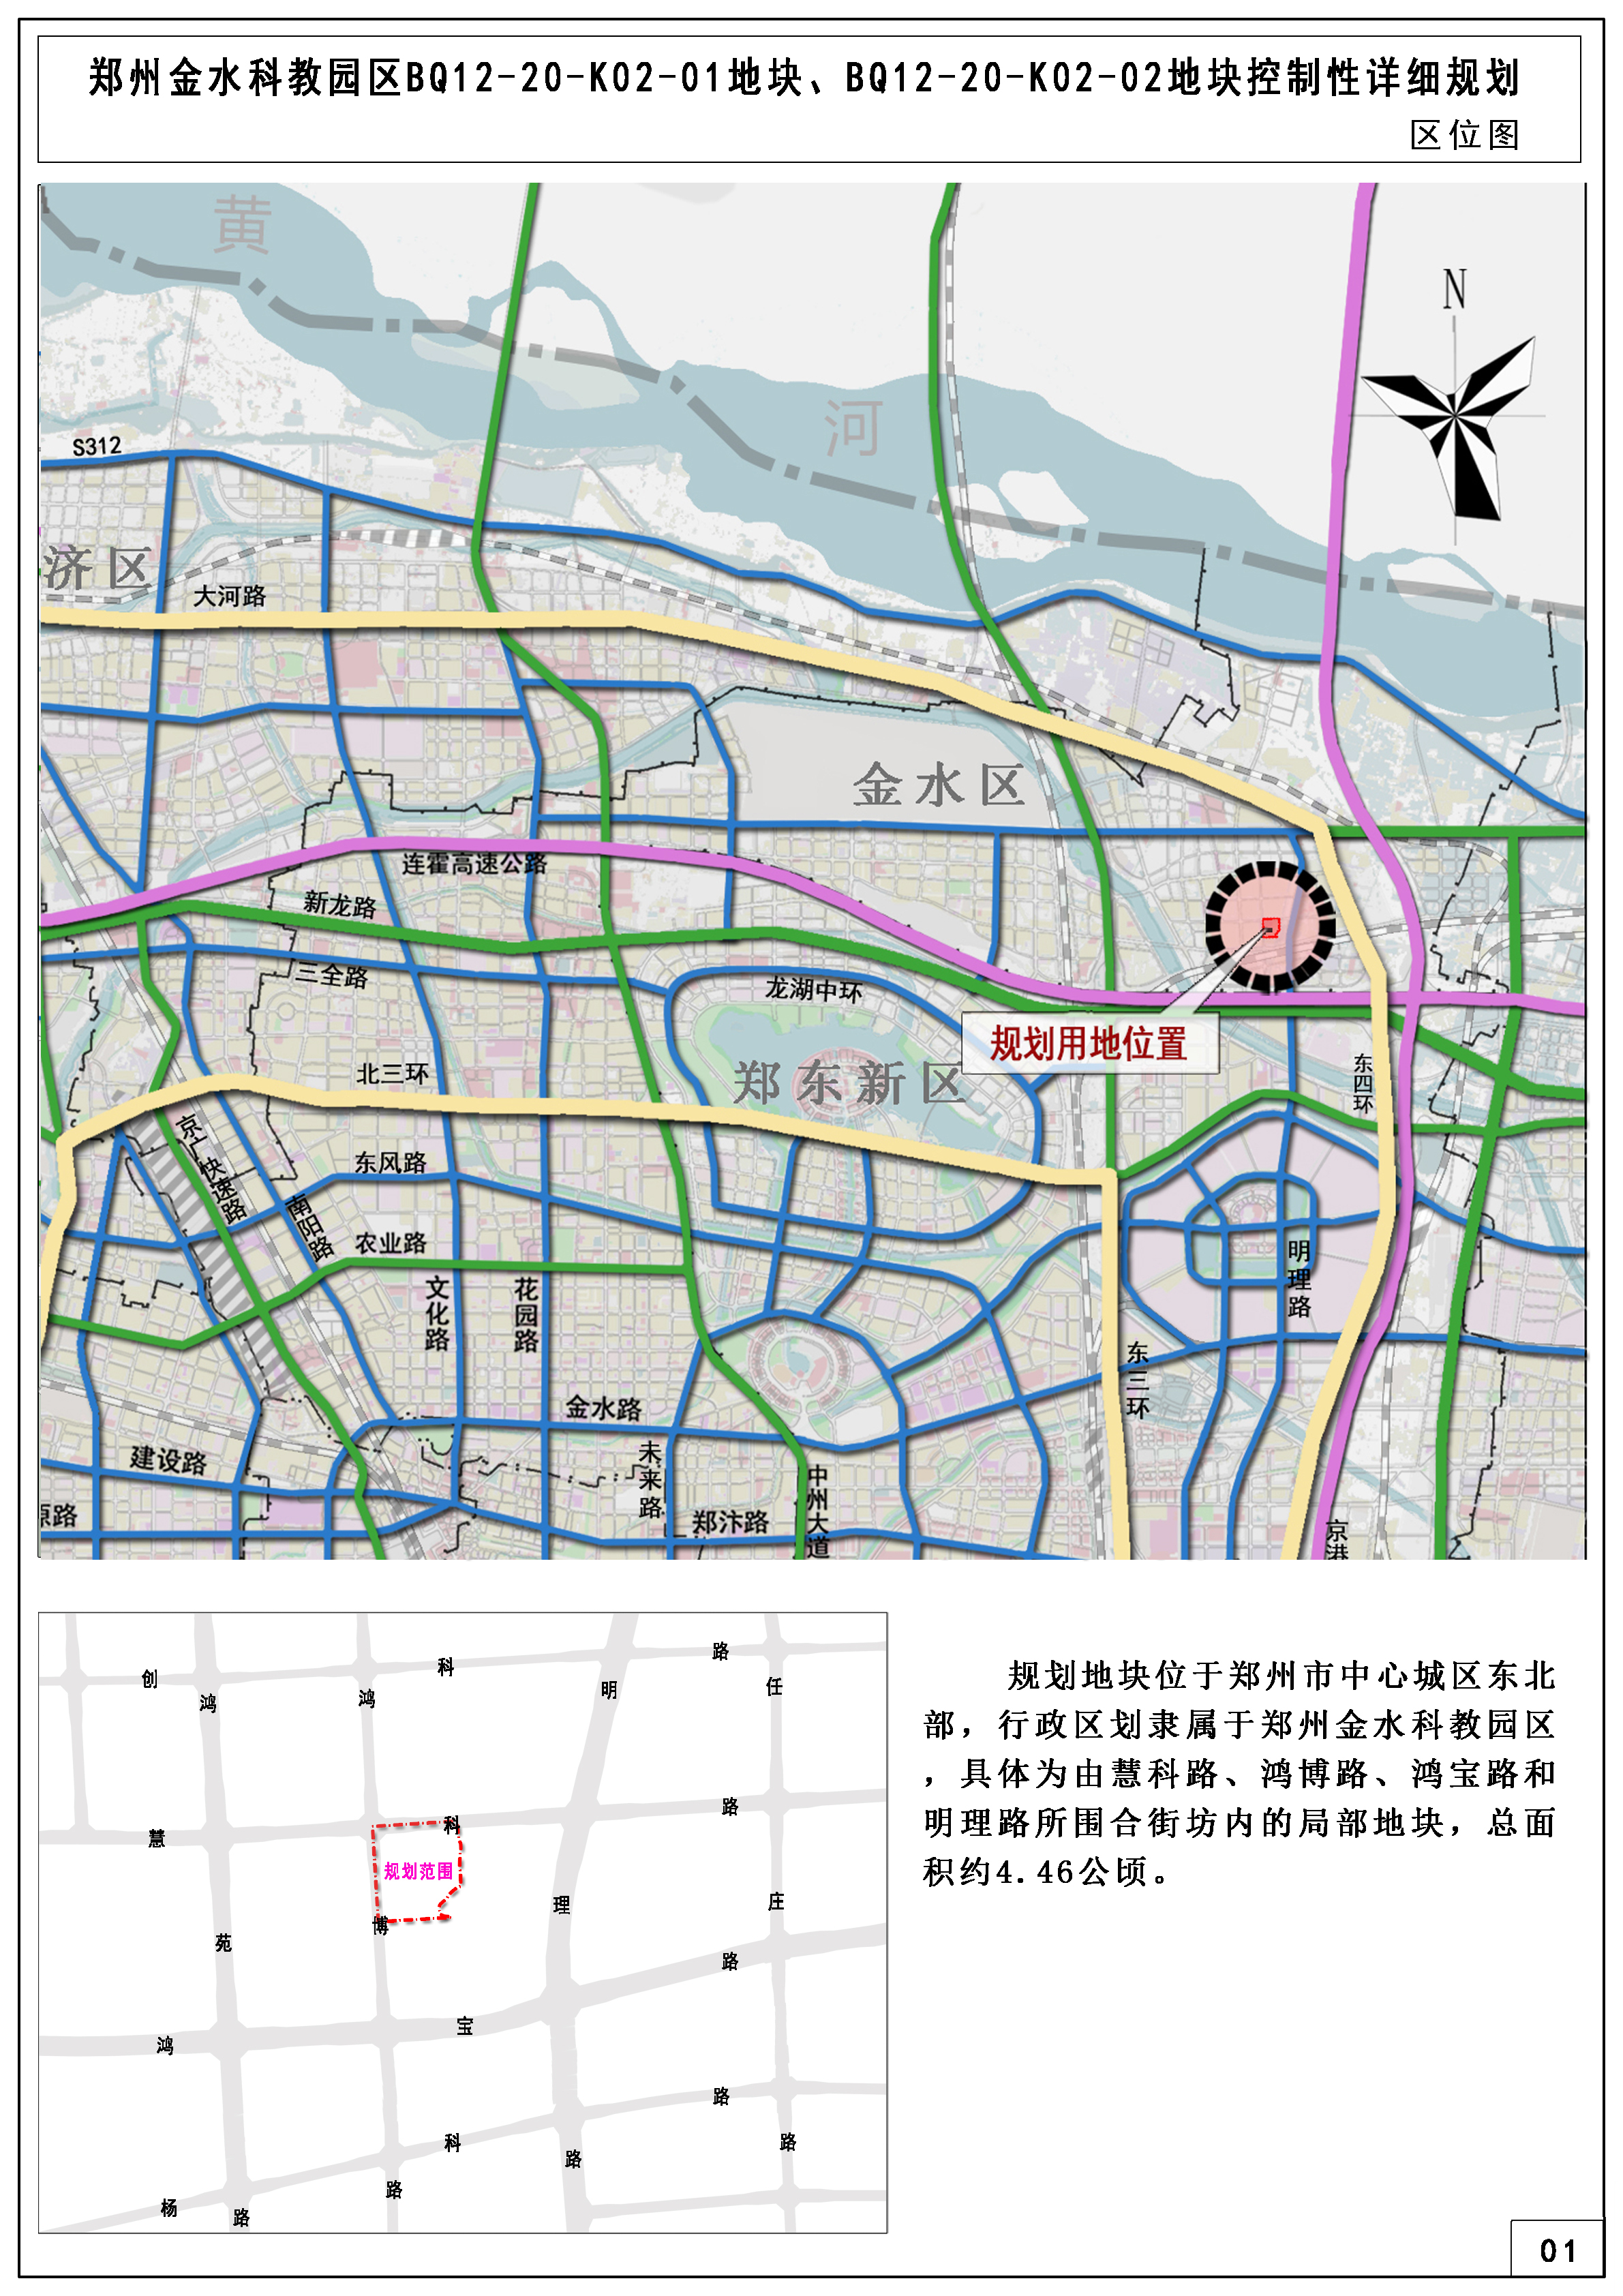 郑州金水科教园区BQ12-20-K02-01地块、BQ12-20-K02-02地块控制性详细规划